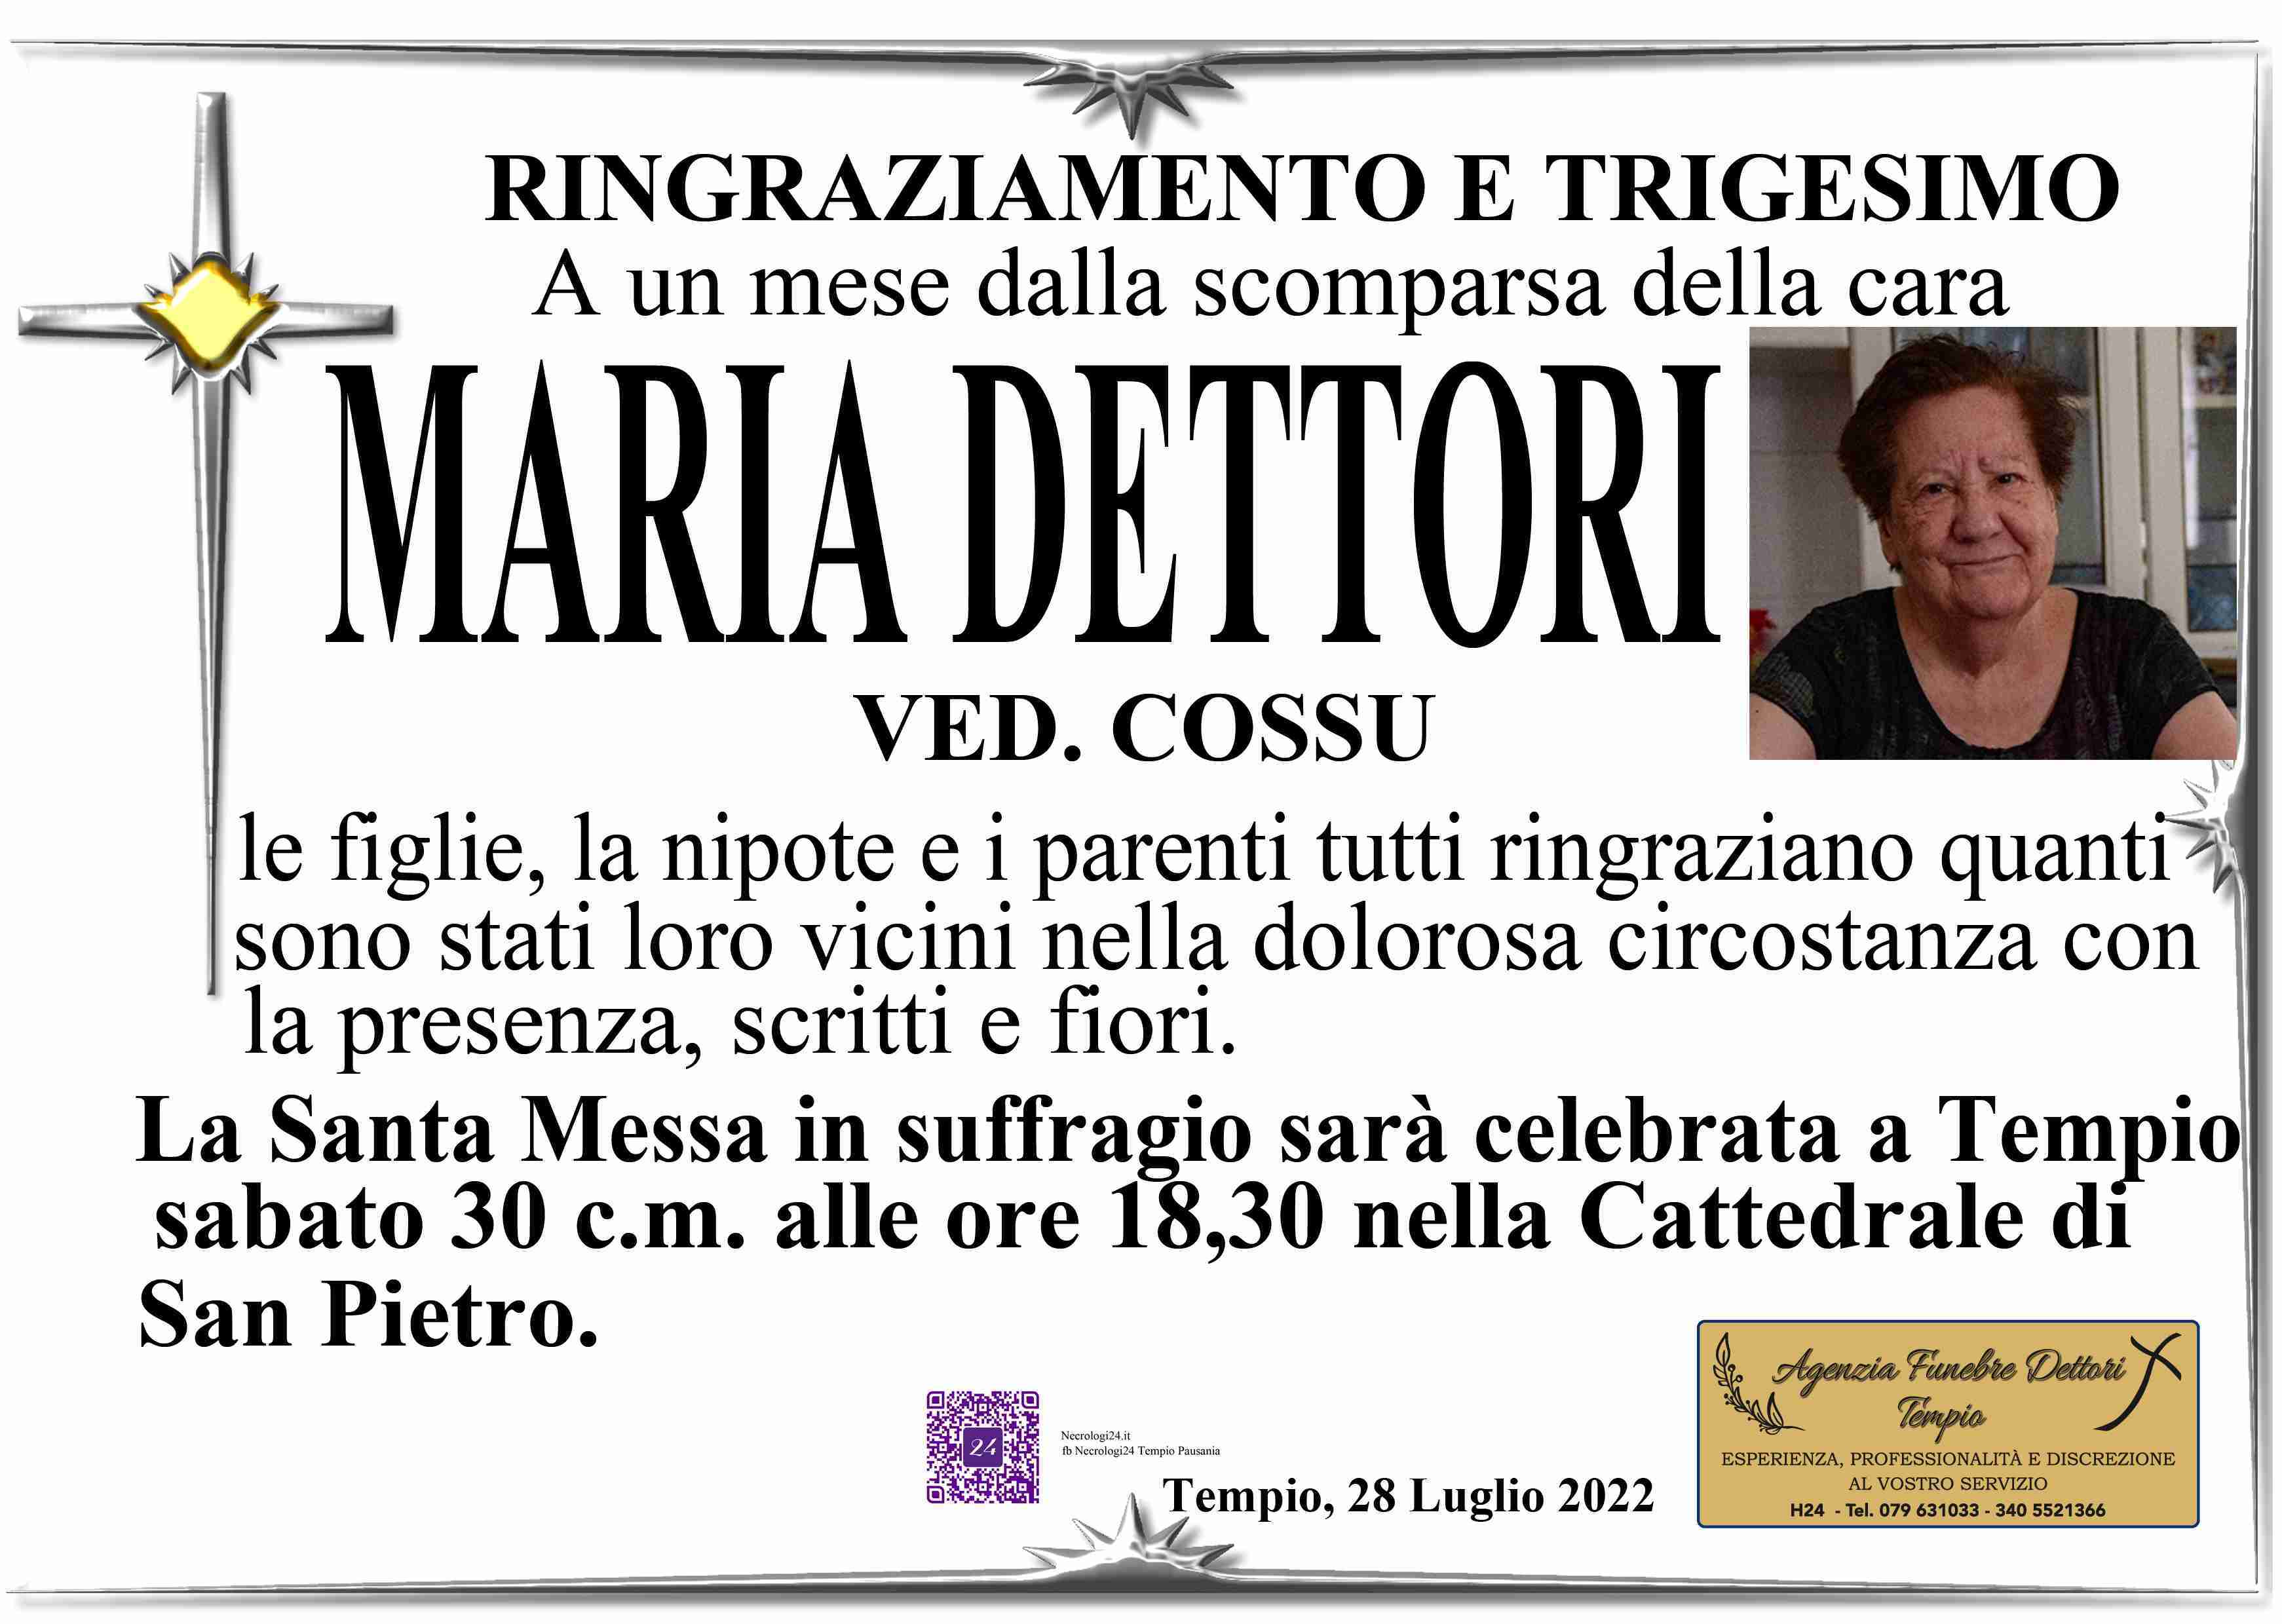 Maria Dettori